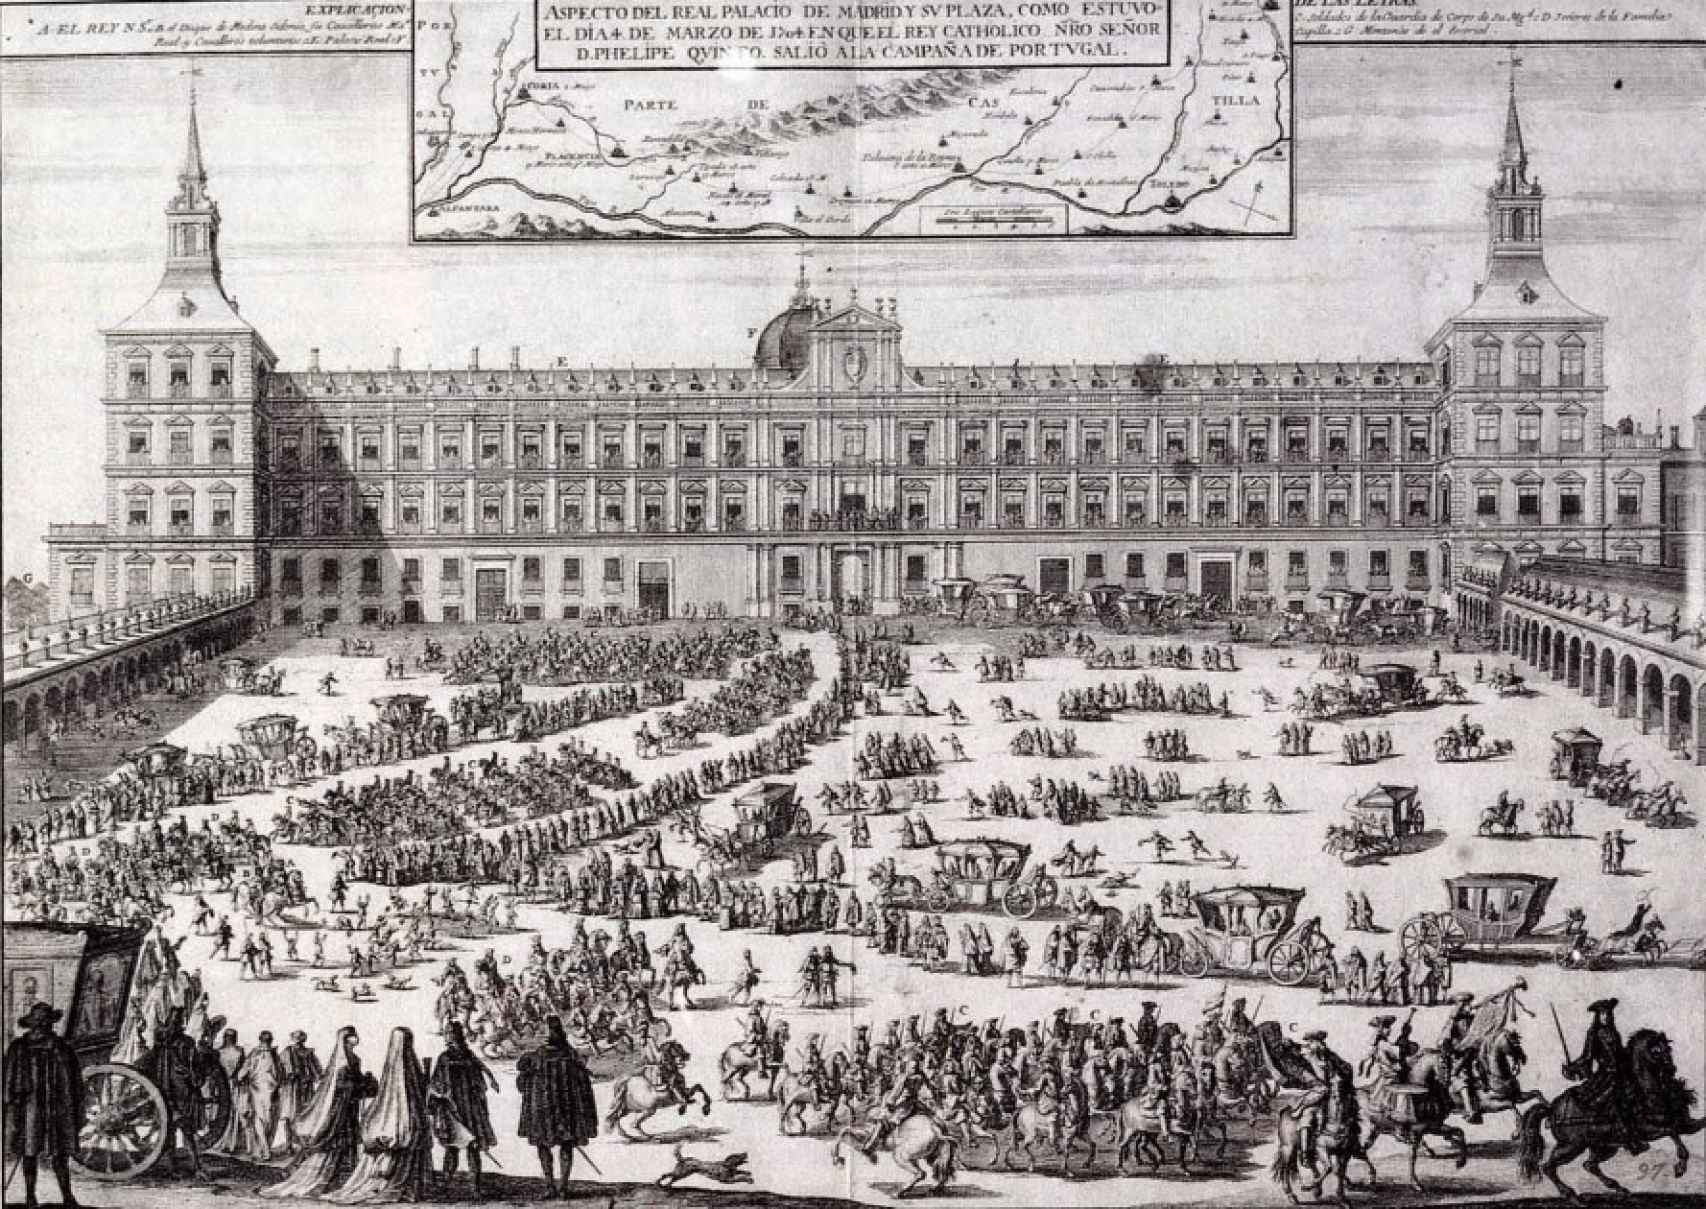 Grabado de Filippo Pallota, donde se puede apreciar la fachada principal del Alcázar de Madrid en 1704.